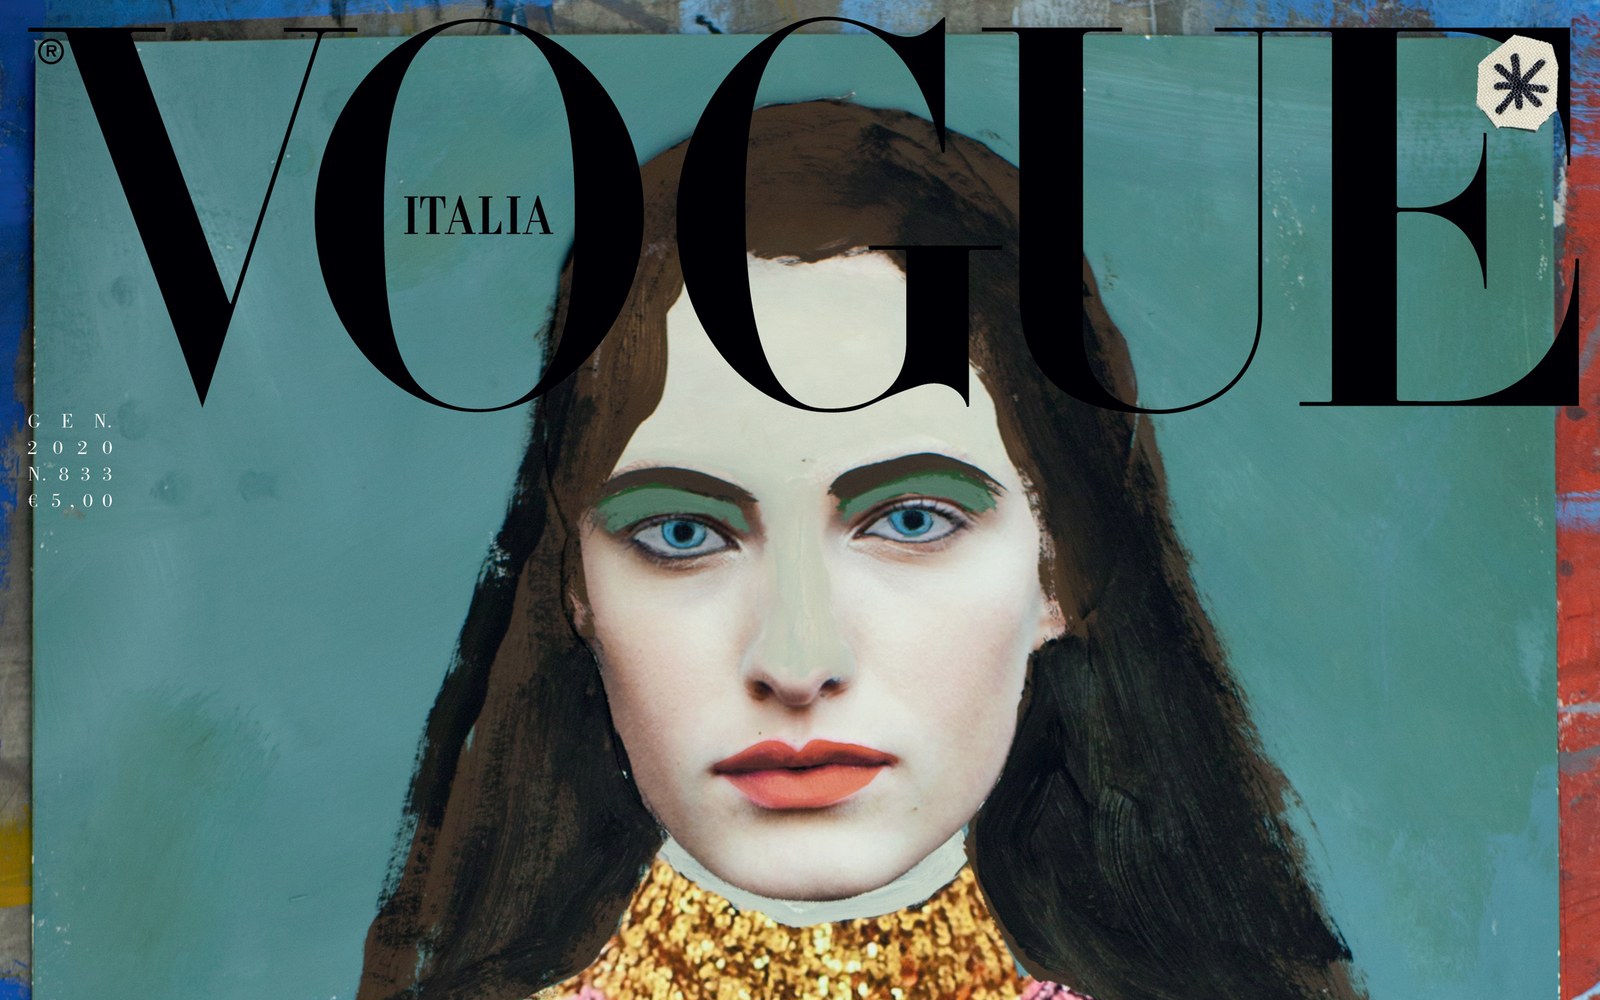 Vogue Italia elimina las sesiones de fotos en su número de enero a favor de la sostenibilidad